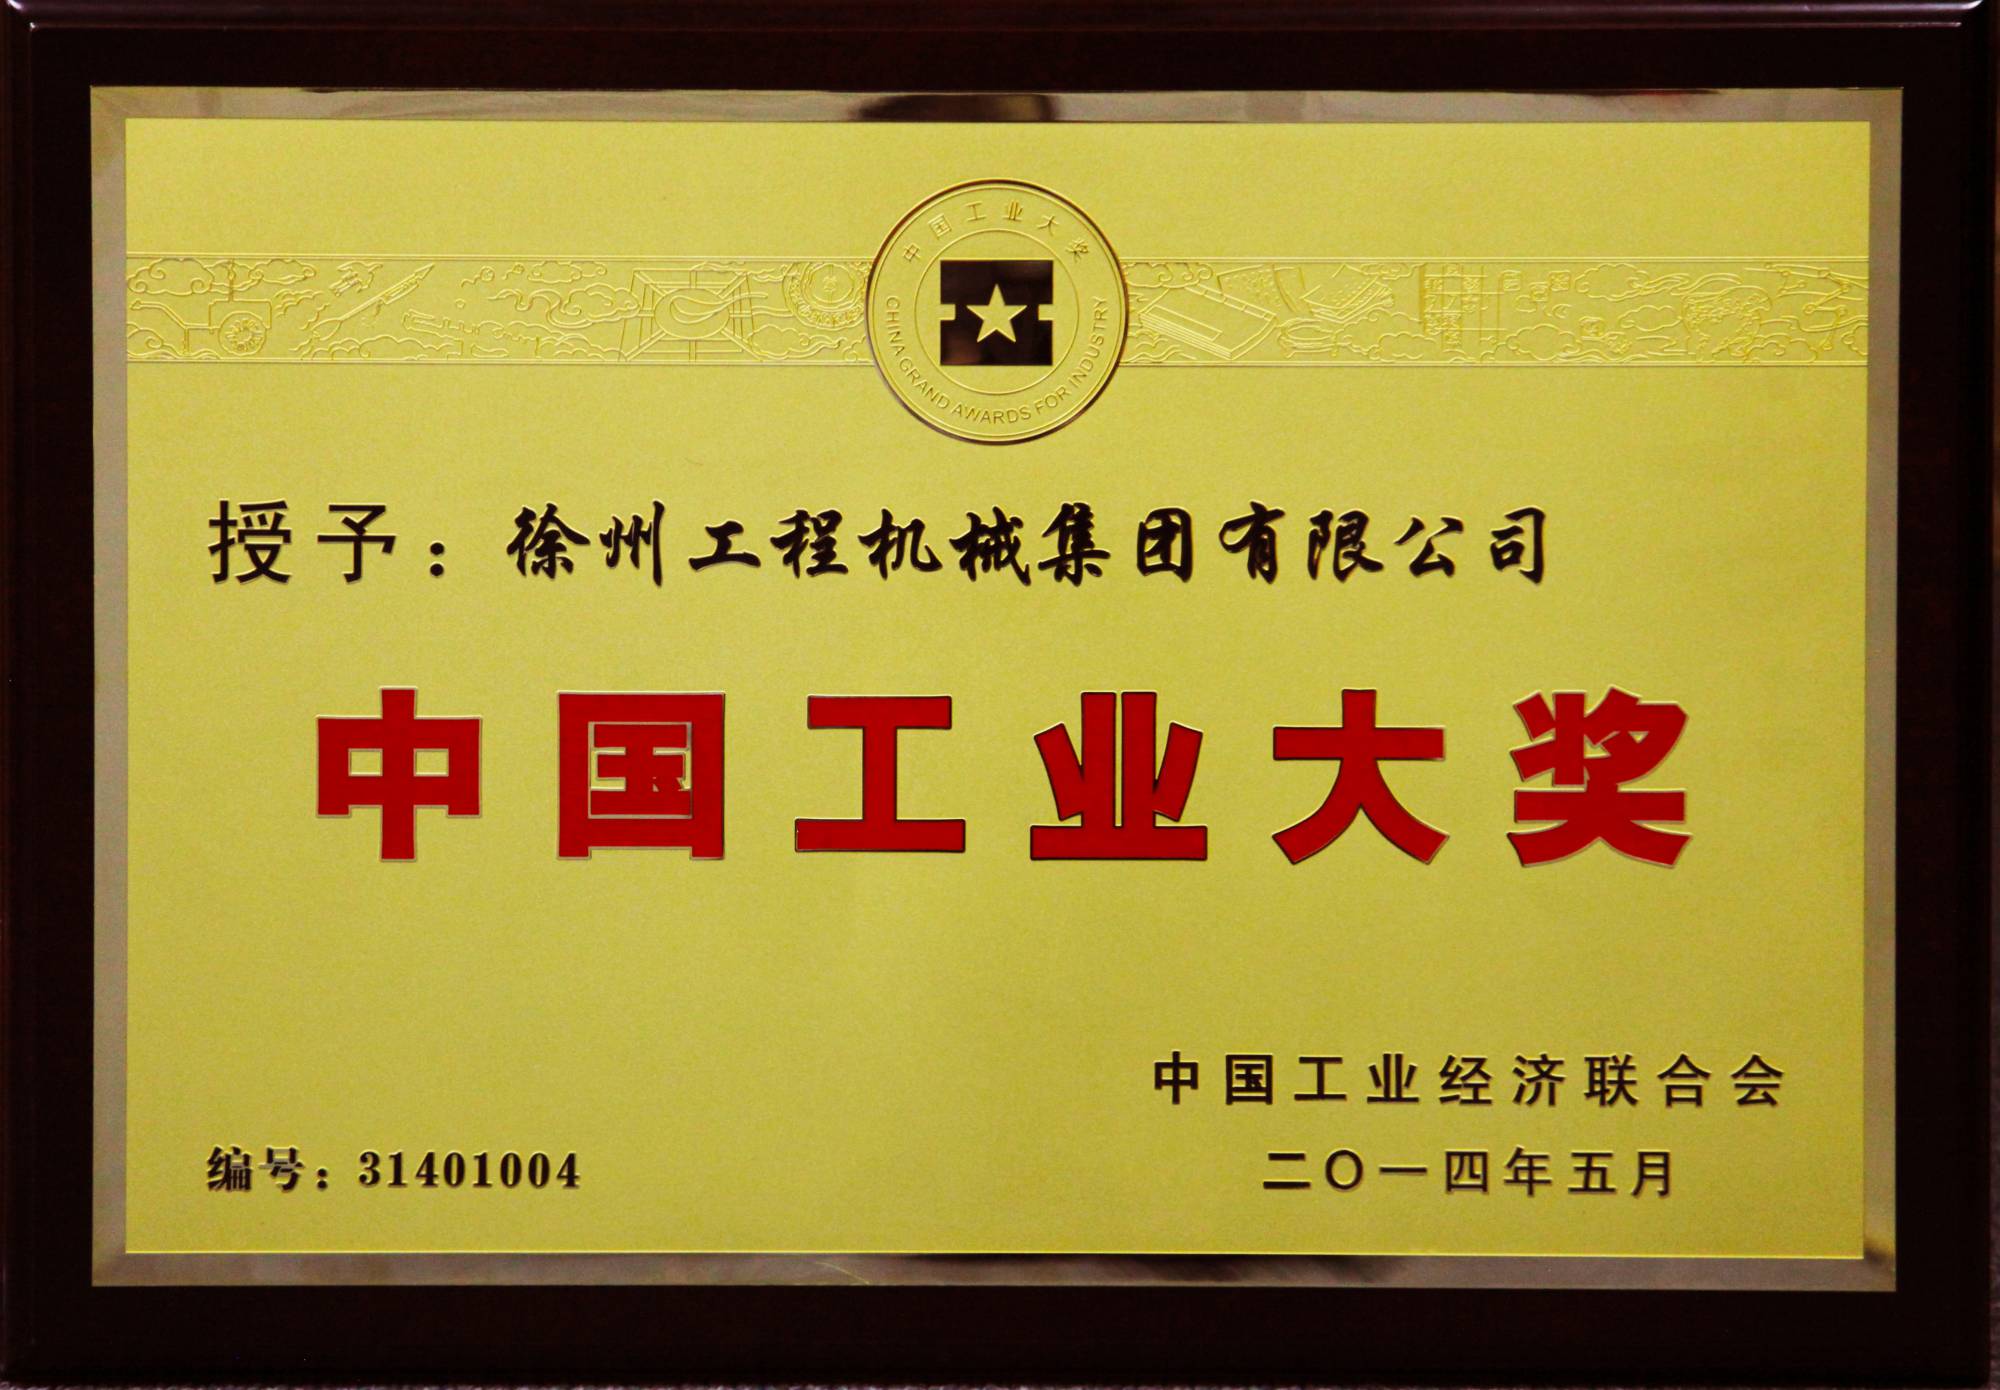 爱游戏荣膺行业唯一的中国工业领域最高奖项——中国工业大奖